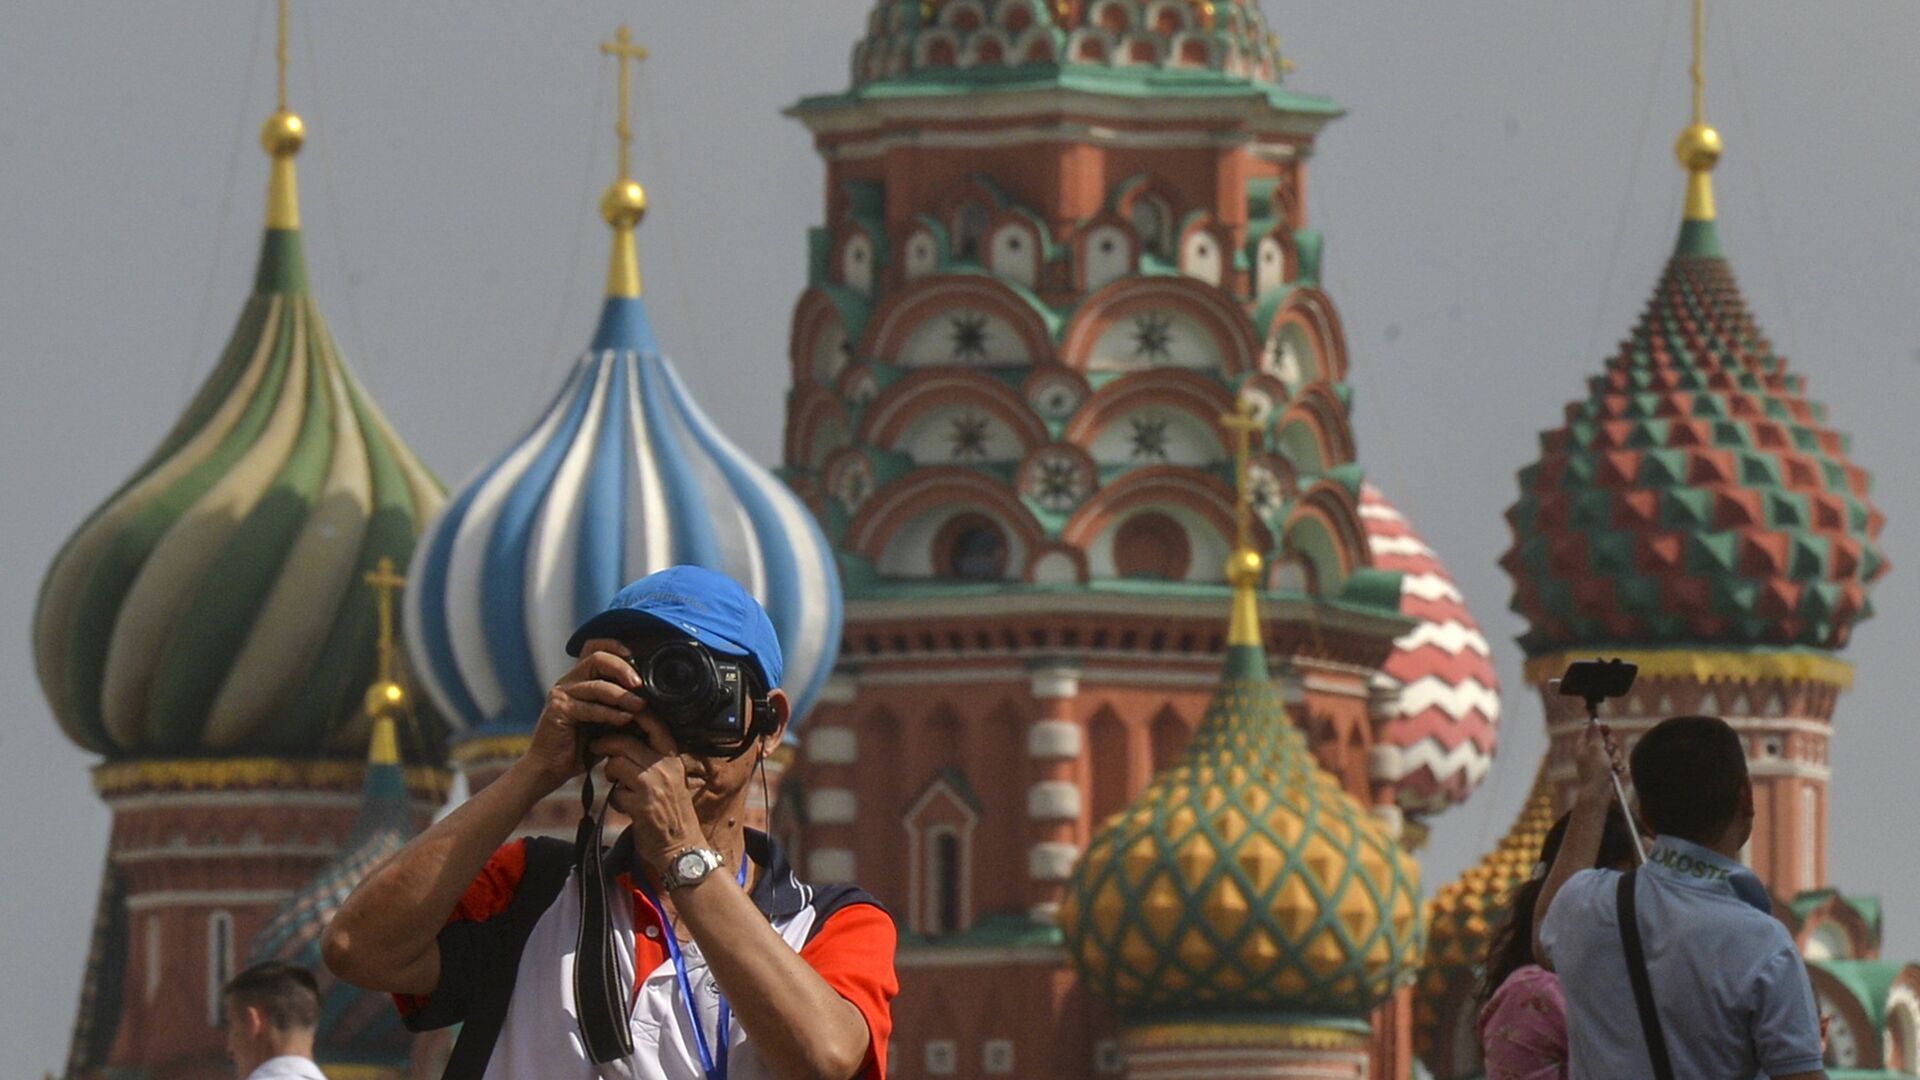 Число турпоездок по России может увеличиться на 11 млн благодаря единой субсидии